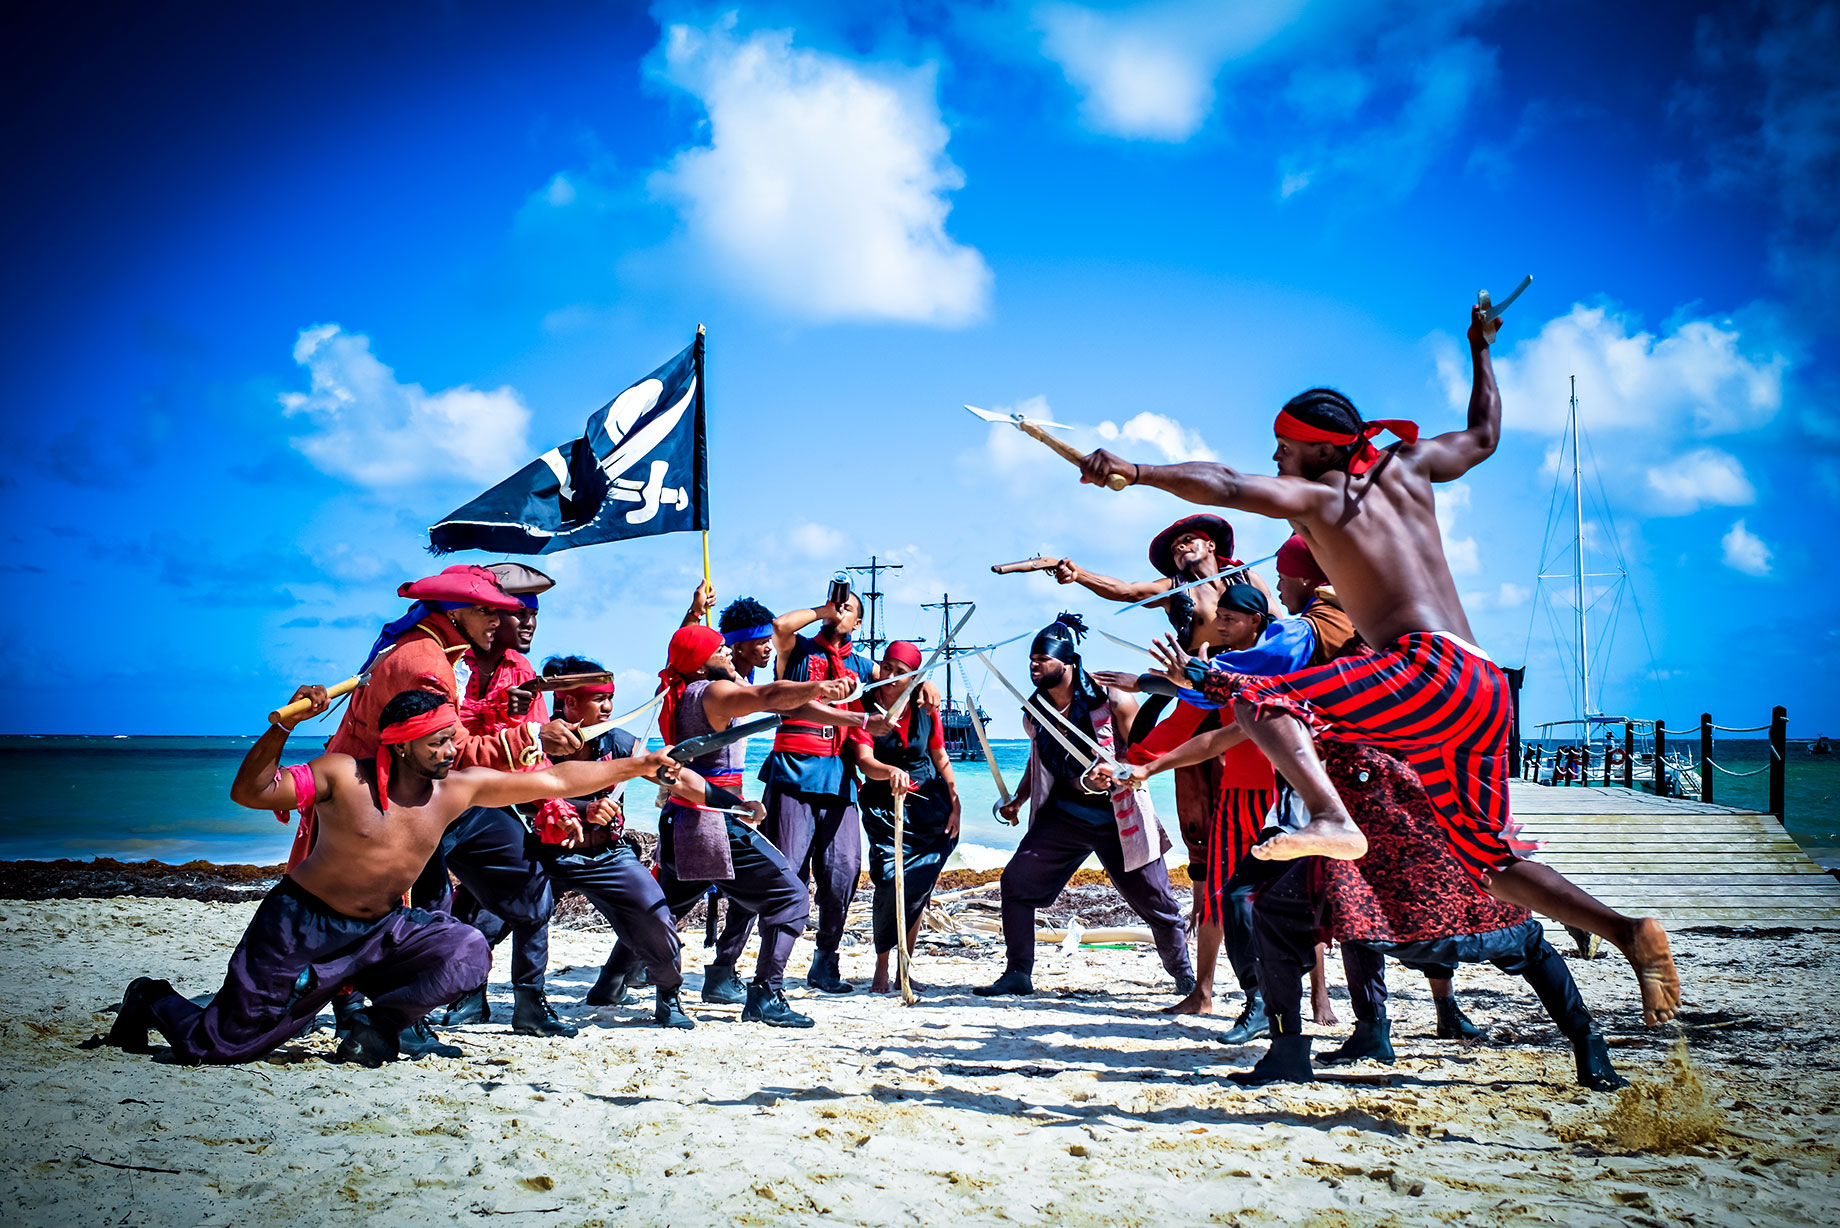 Pirates - Ocean Adventures Punta Cana, Dominican Republic